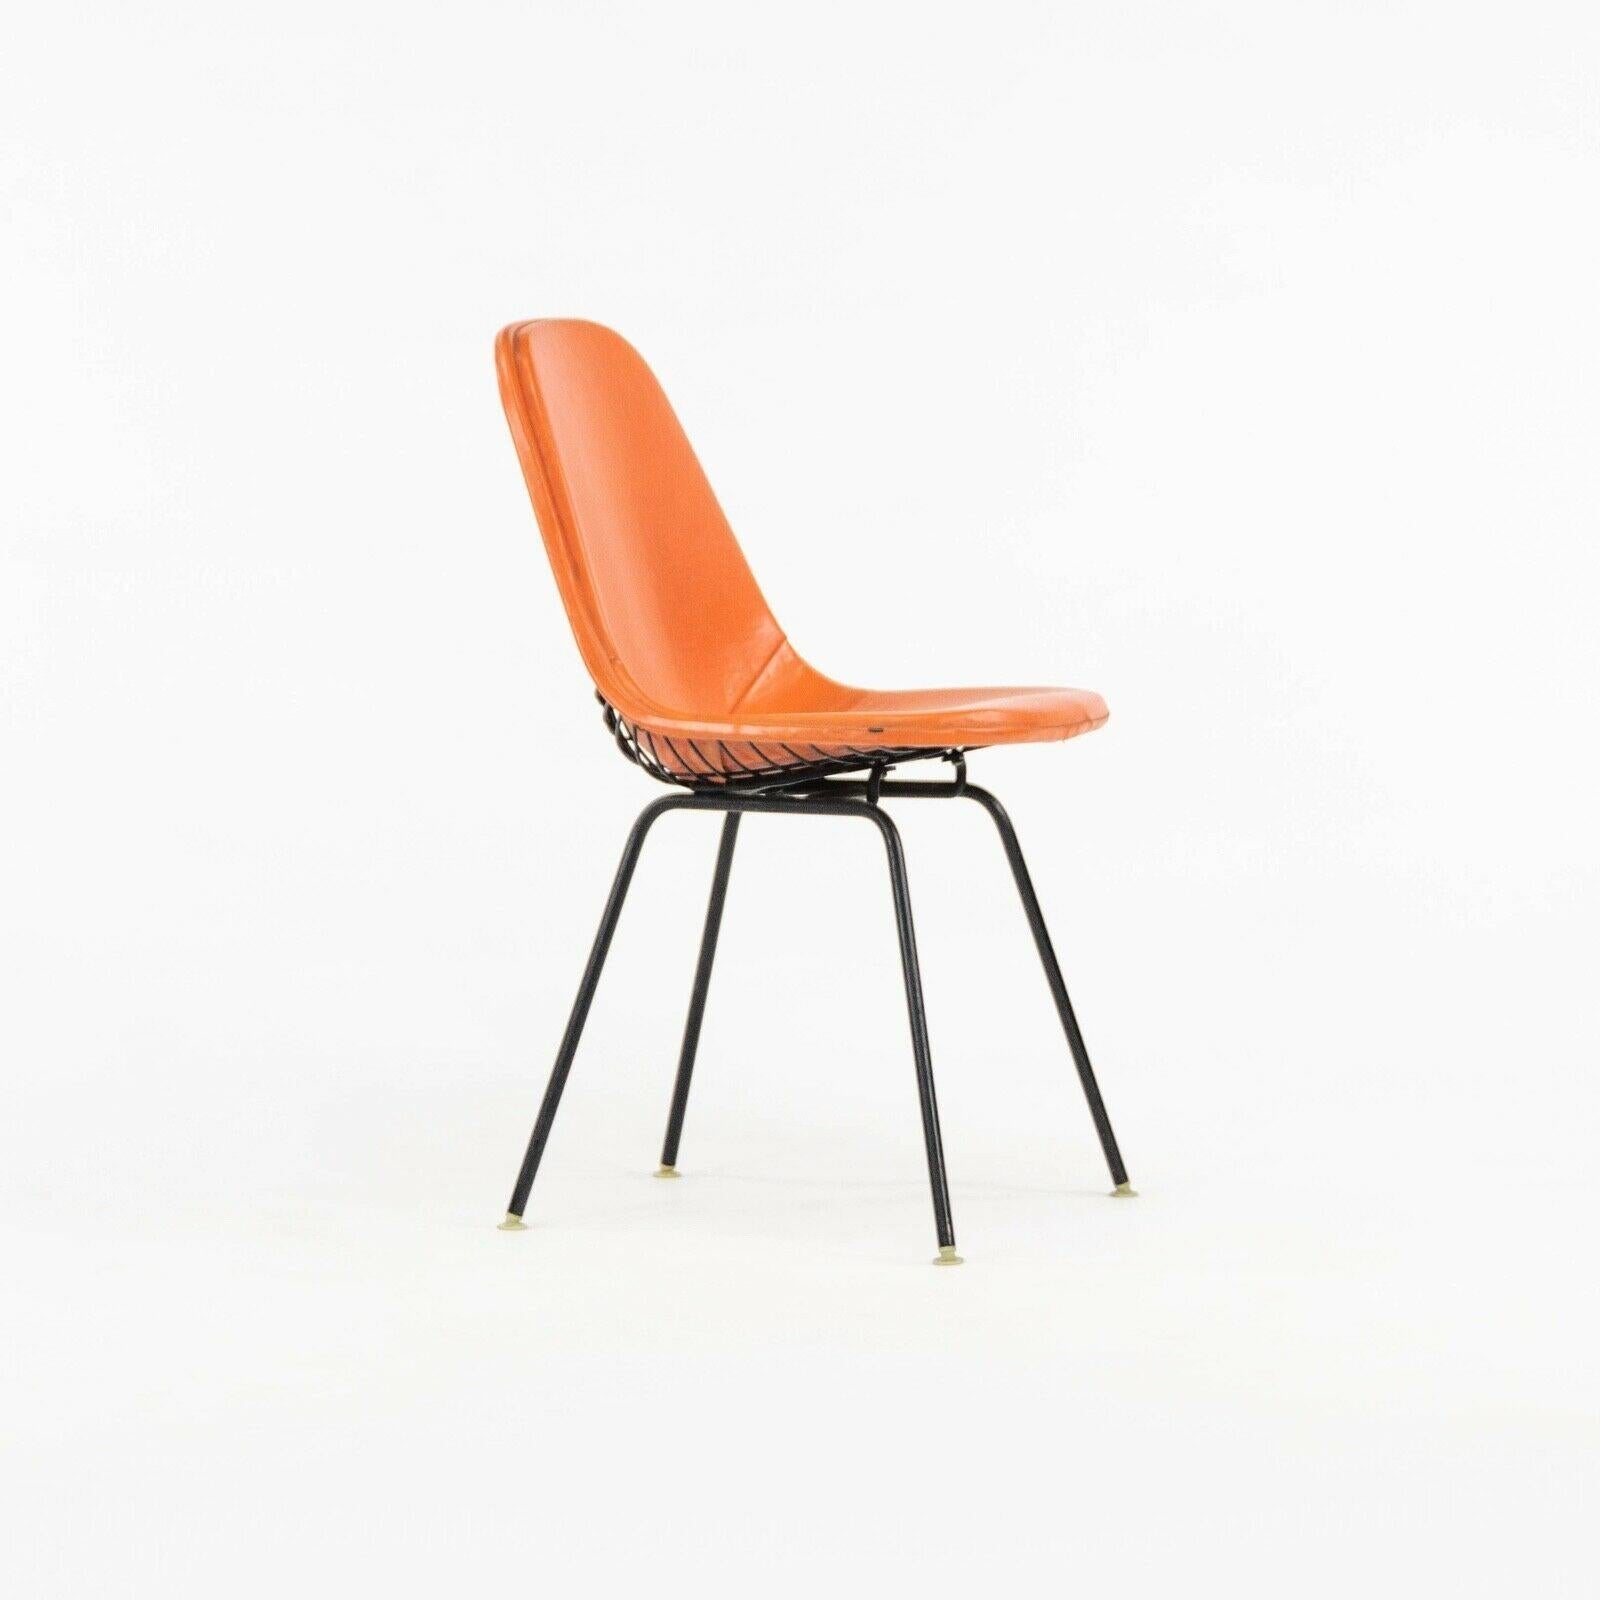 Nous proposons à la vente une chaise de salle à manger Eames DKX, datant de 1957, dont la partie supérieure est en fil de fer et dont le pad est entièrement rembourré. Le pad est en Naugahyde original de couleur rouge/orange. La sellerie est dans